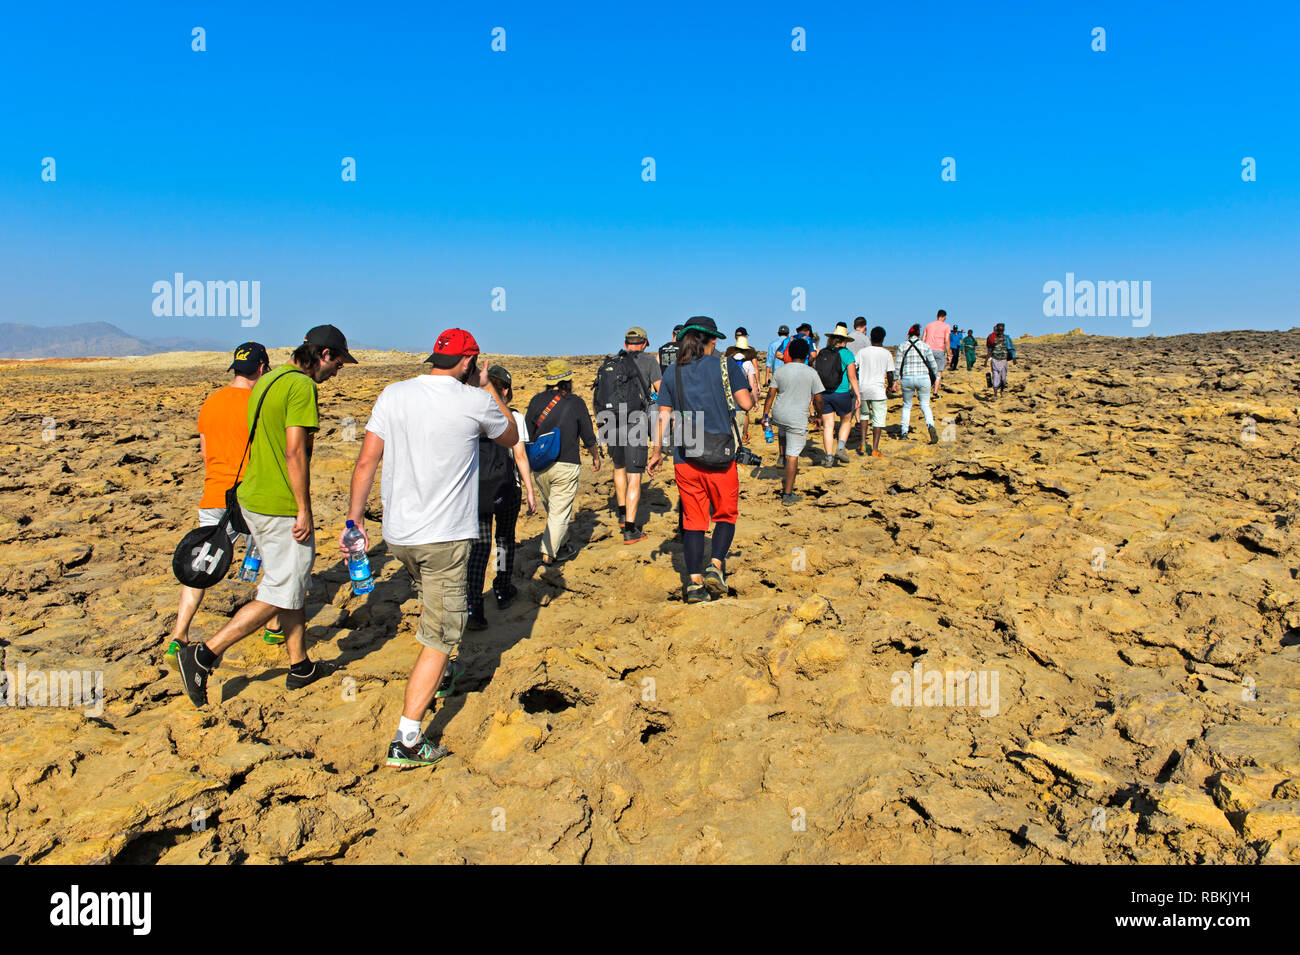 Overtourism, groupes de touristes sur le chemin de la caldeira Dallol, géothermique domaine de la dépression Danakil, Dallol, Triangle Afar, Ethiopie Banque D'Images